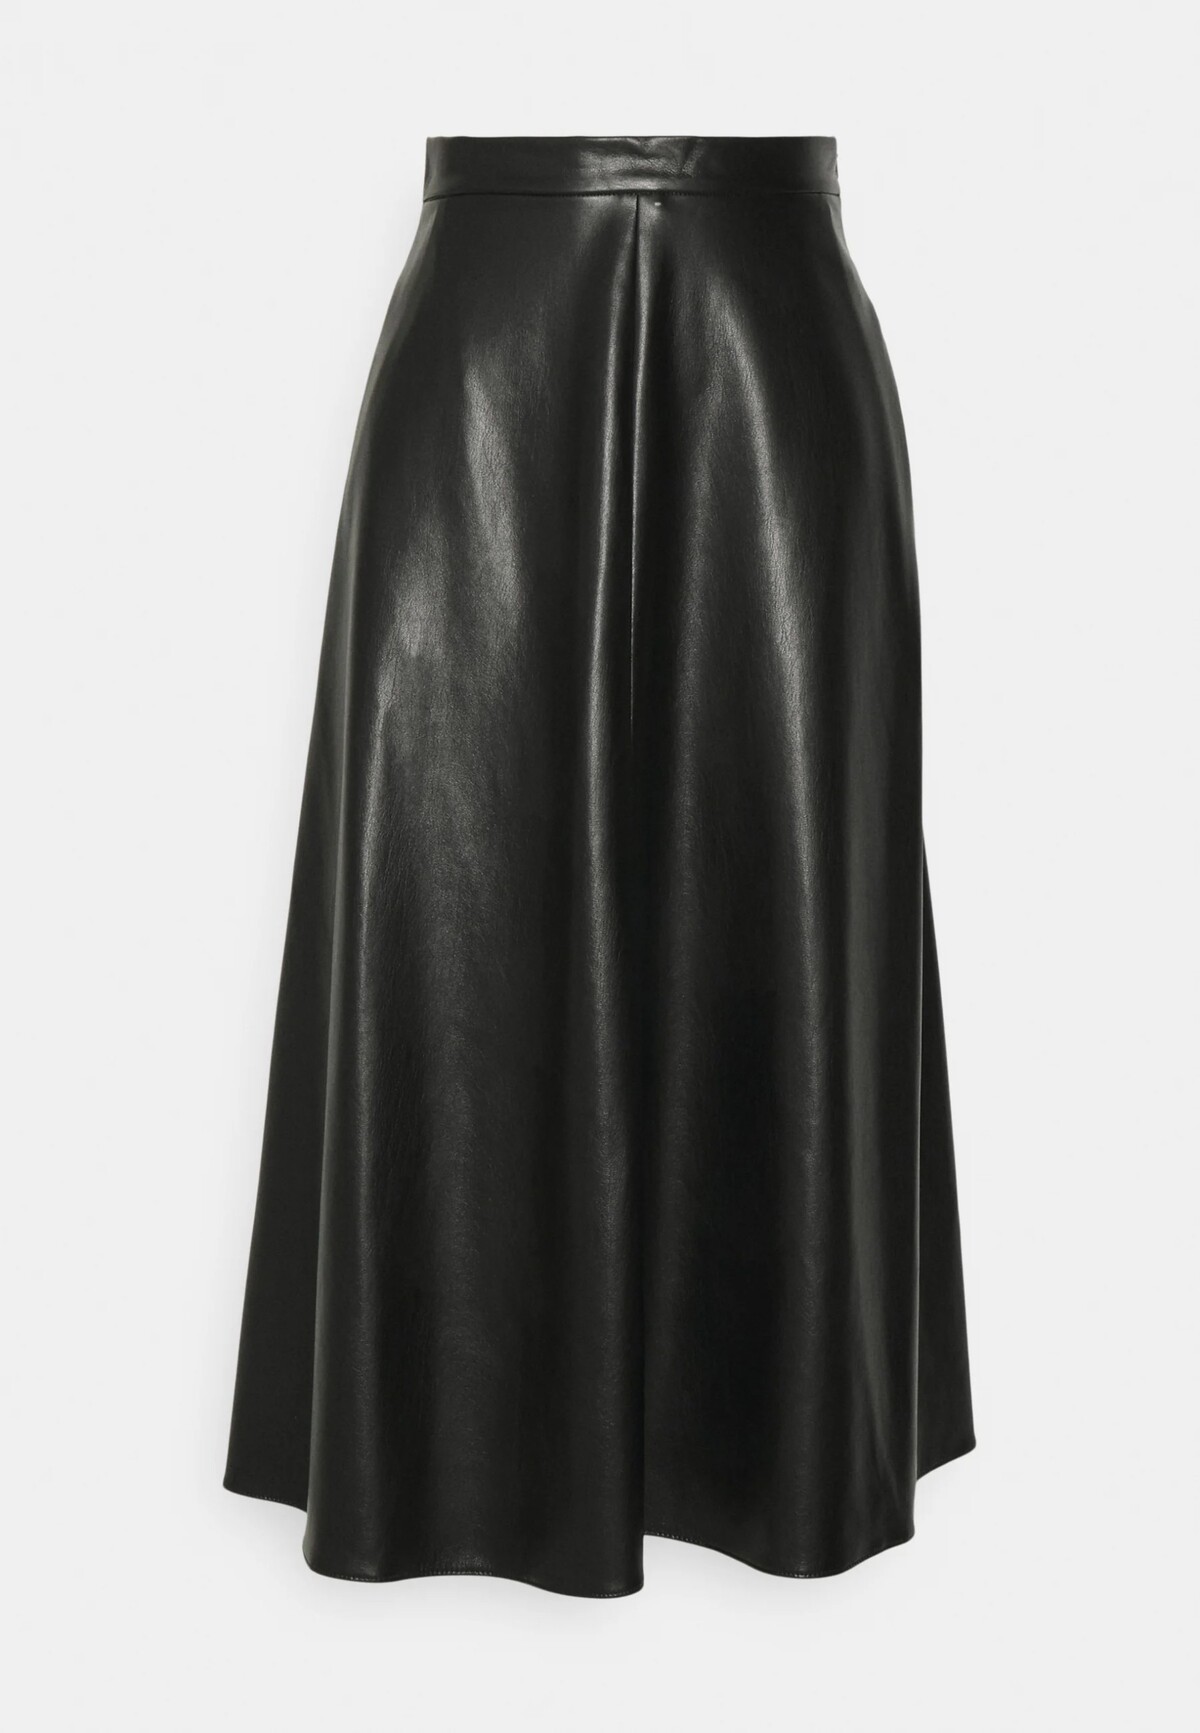 So sukňou WEEKEND MaxMara áčkového strihu budeš neprehliadnuteľná. Posledné roky sa však podobné modely vyskytujú aj v mužských celebritných kruhoch. Tento konkrétny model môžeš mať za 209,95 €.

